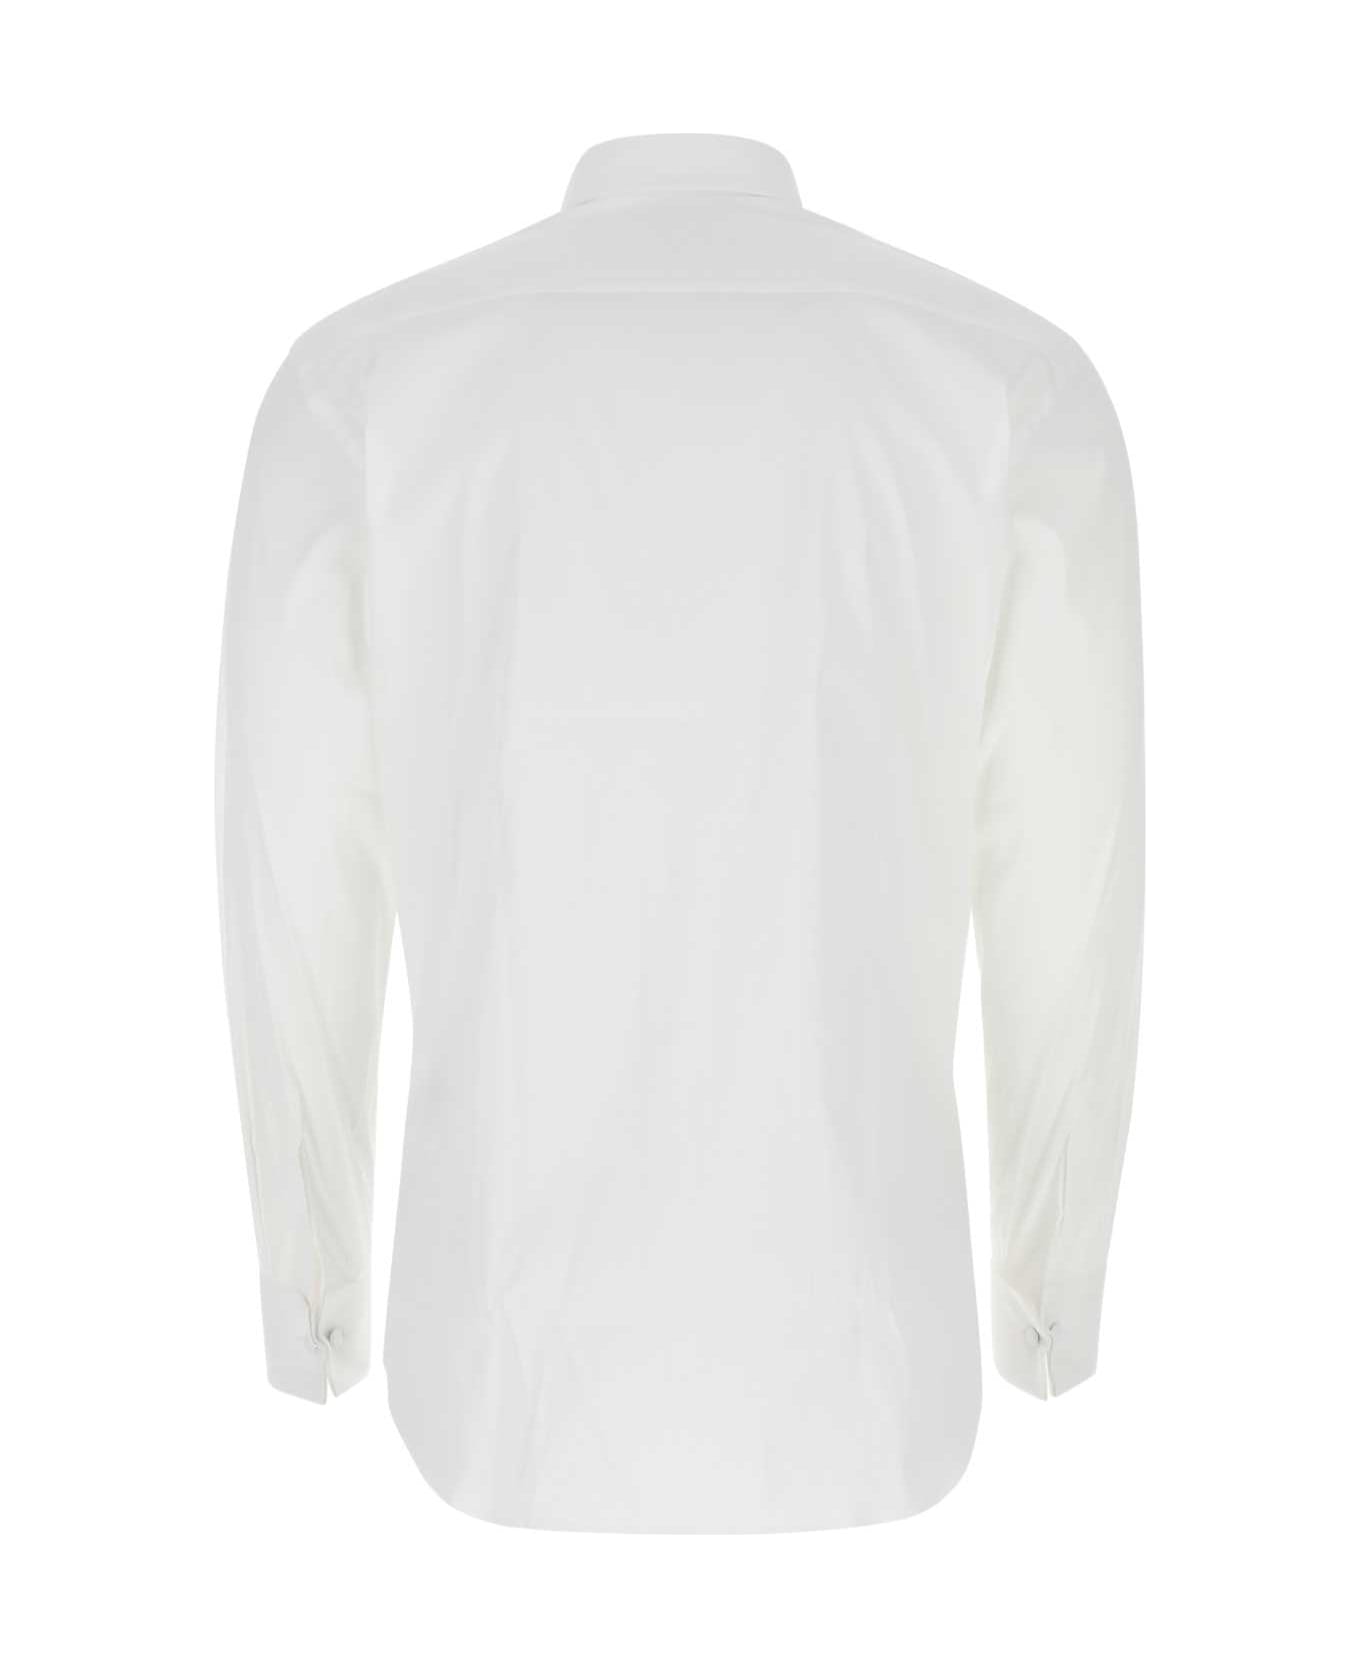 Prada Stretch Poplin Shirt - F0009 シャツ